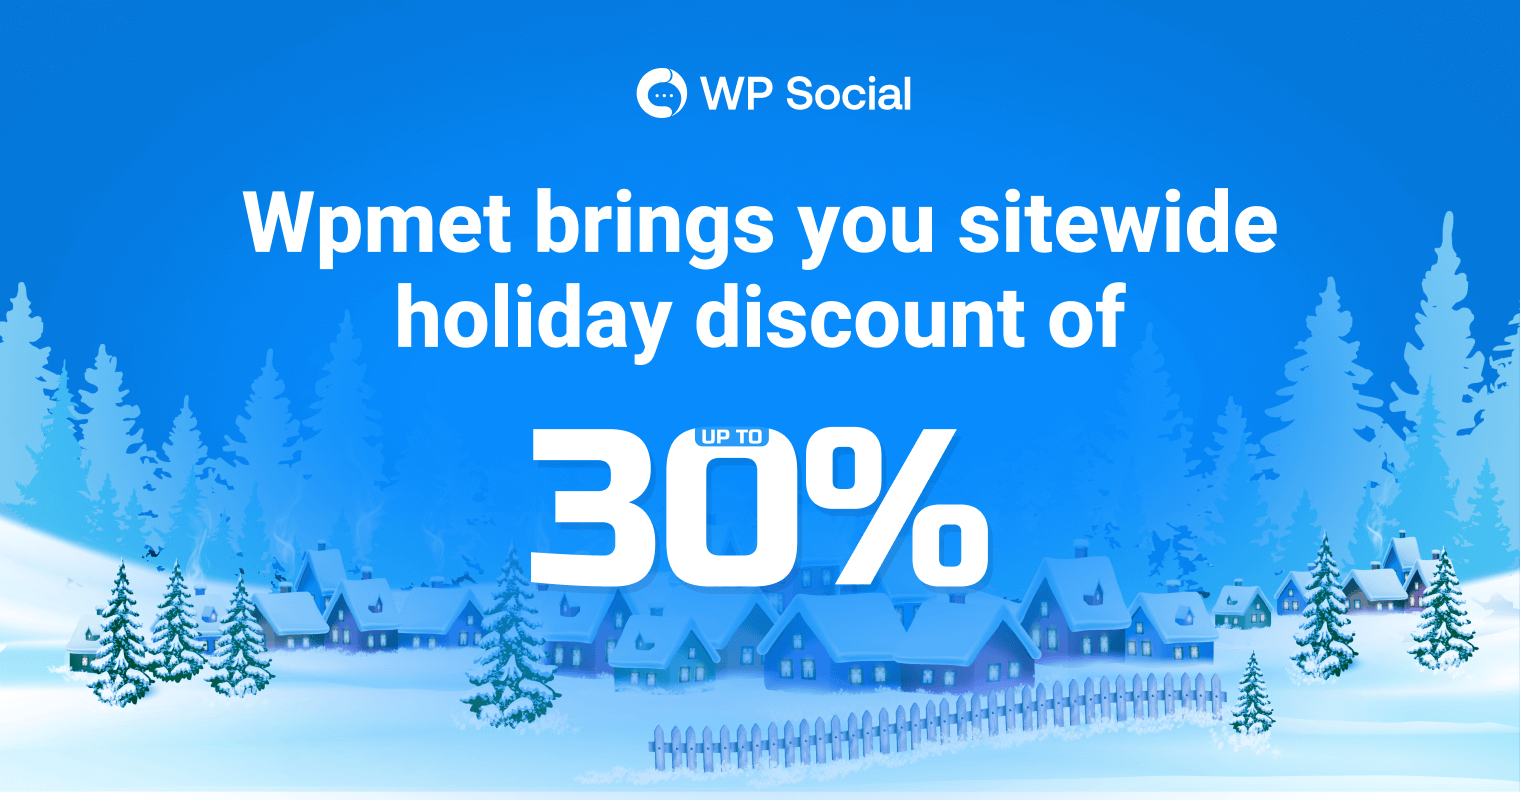 WP Social holiday deals